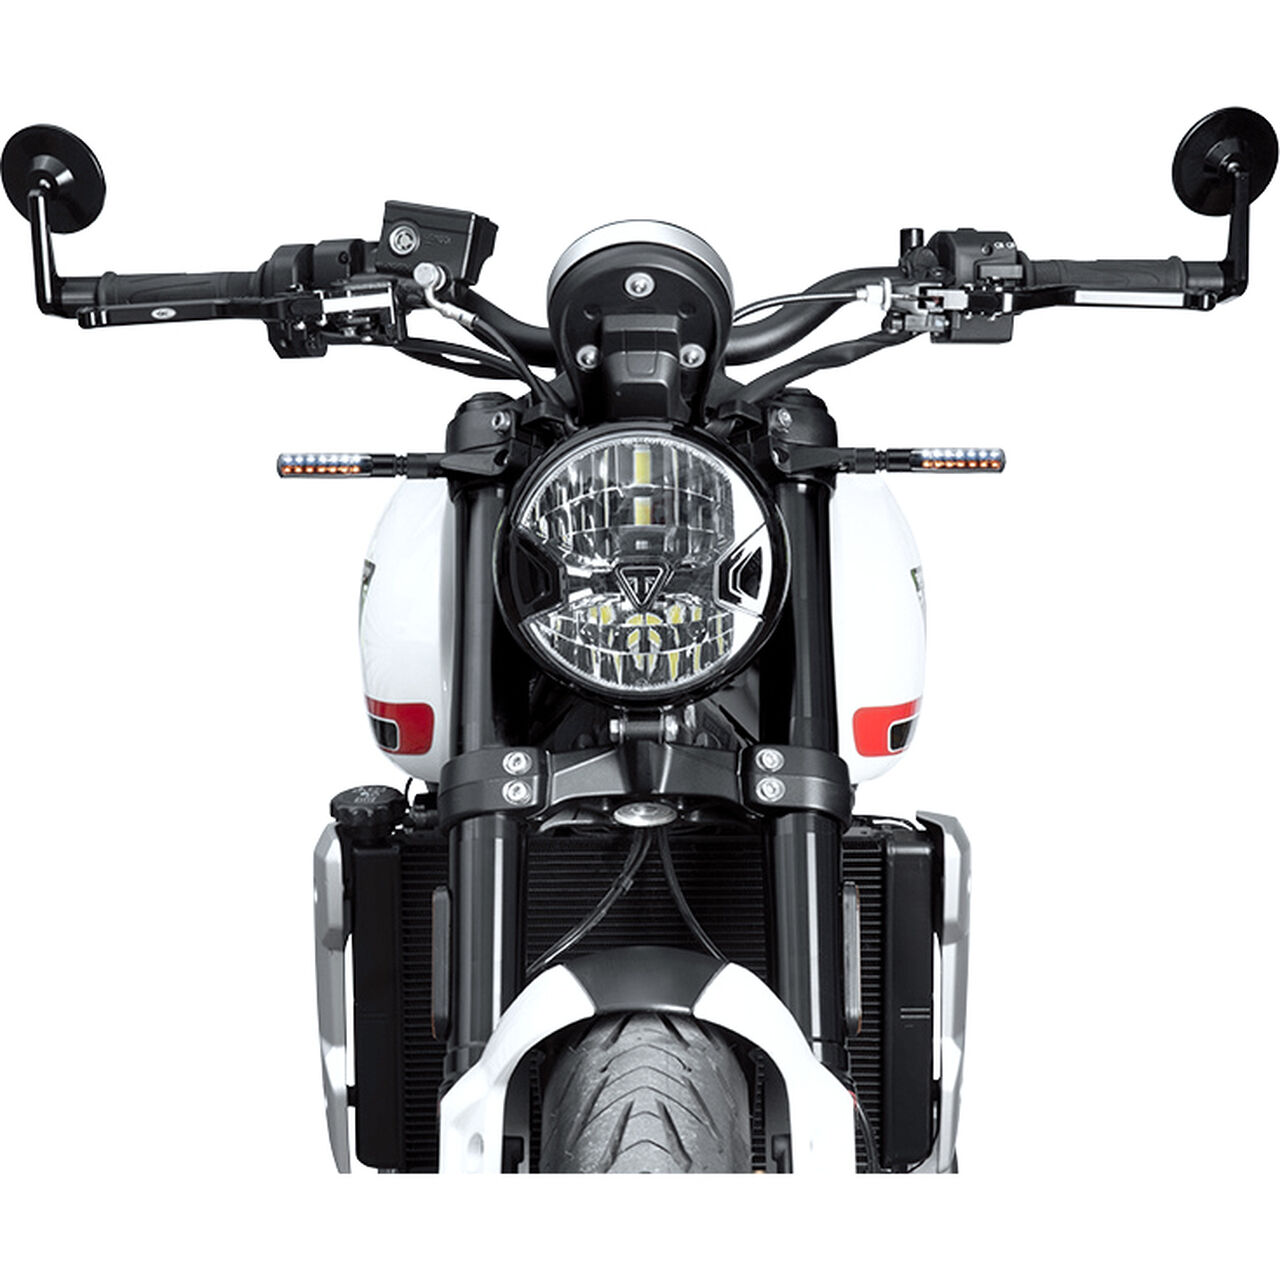 FAR Motorrad LED Blinker Arrow Line, Aluminium, Paar, E-geprüft, M8, FAR Blinker, FAR Spiegel und Blinker